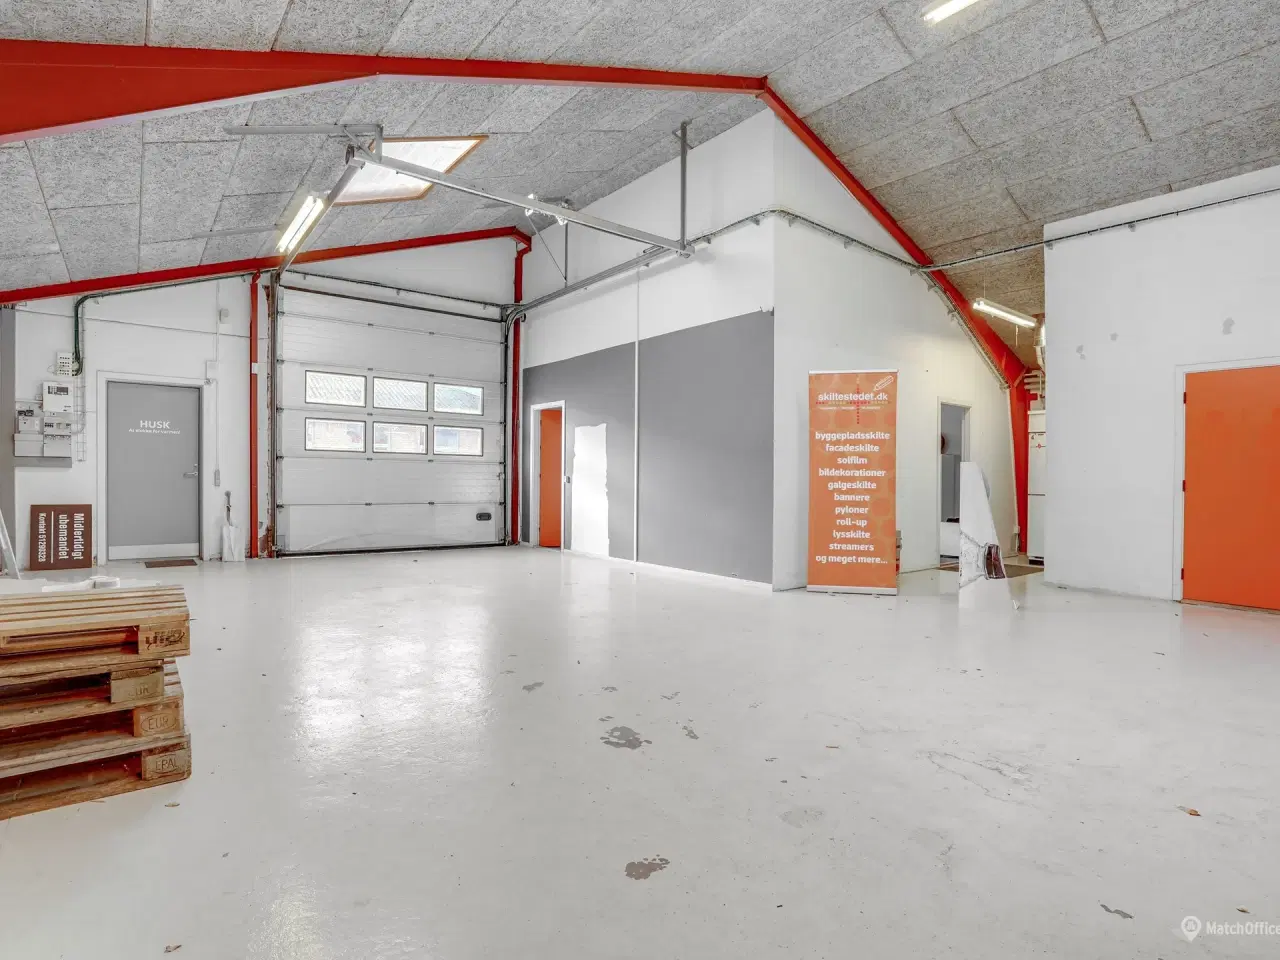 Billede 4 - 332 m² lager/kontor i større erhvervspark